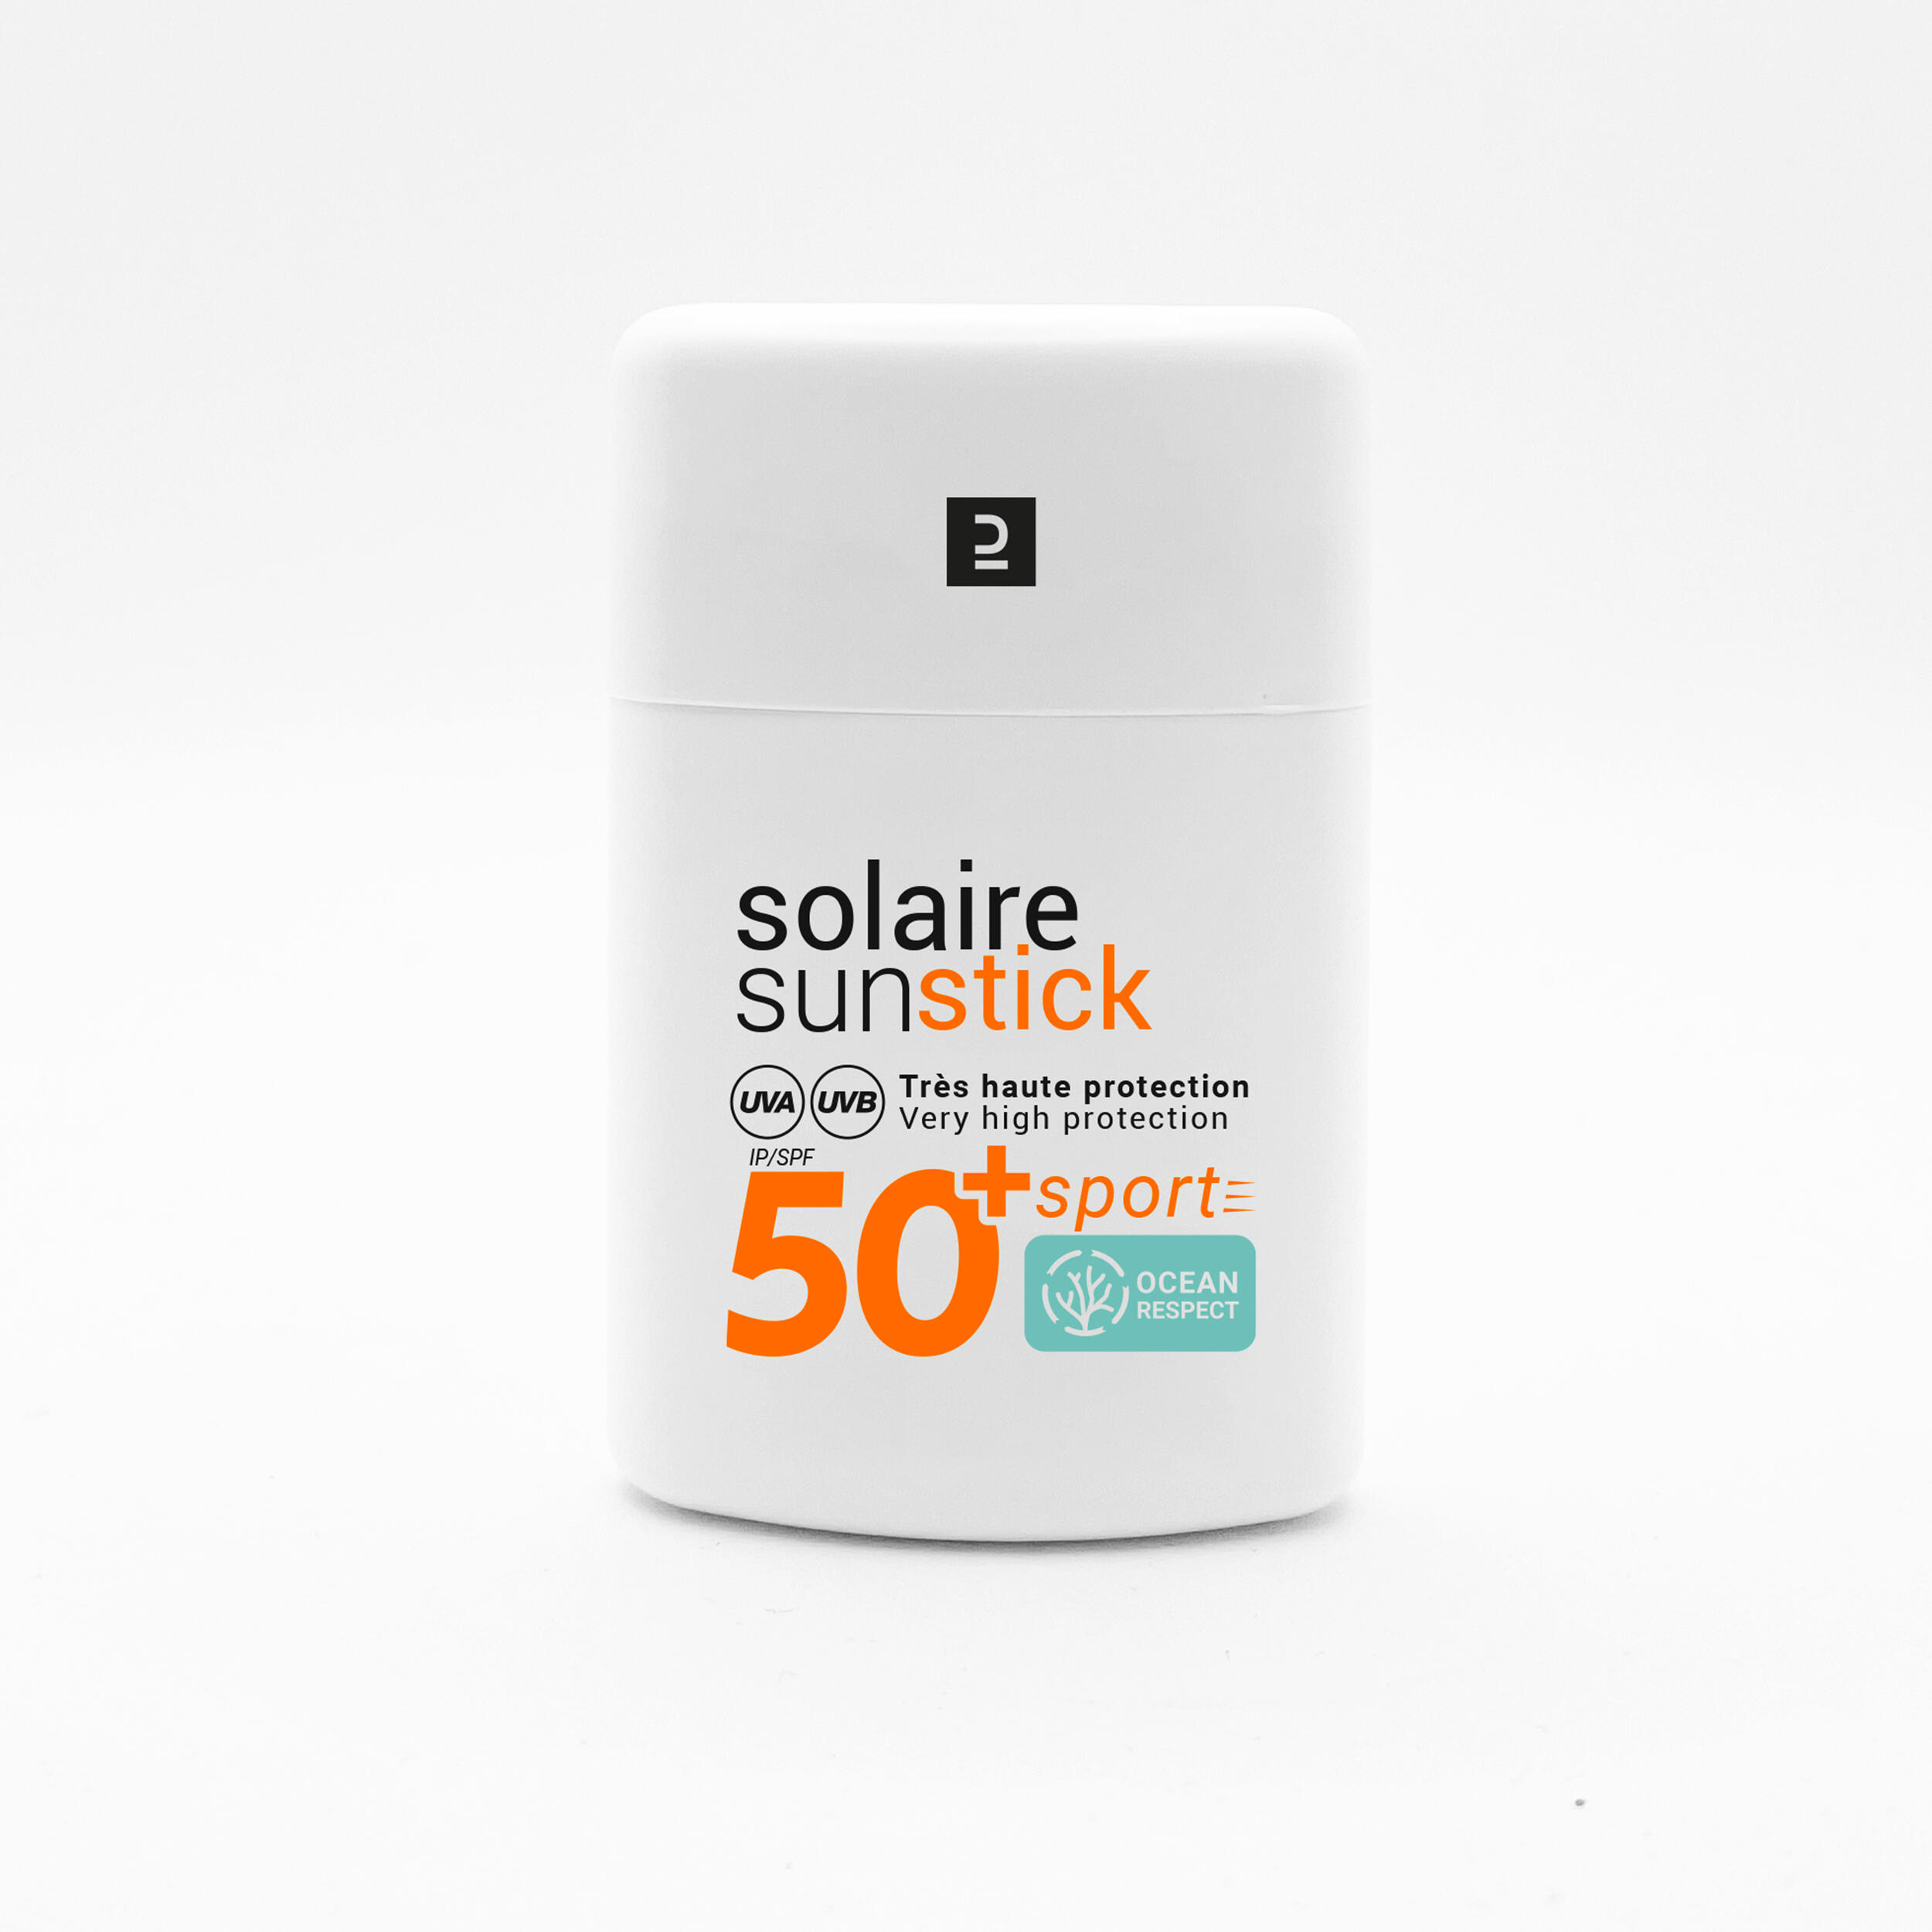 Stick hidratantă cu protecție solară 2 în 1 buze şi faţă FPS 50+ La Oferta Online decathlon imagine La Oferta Online